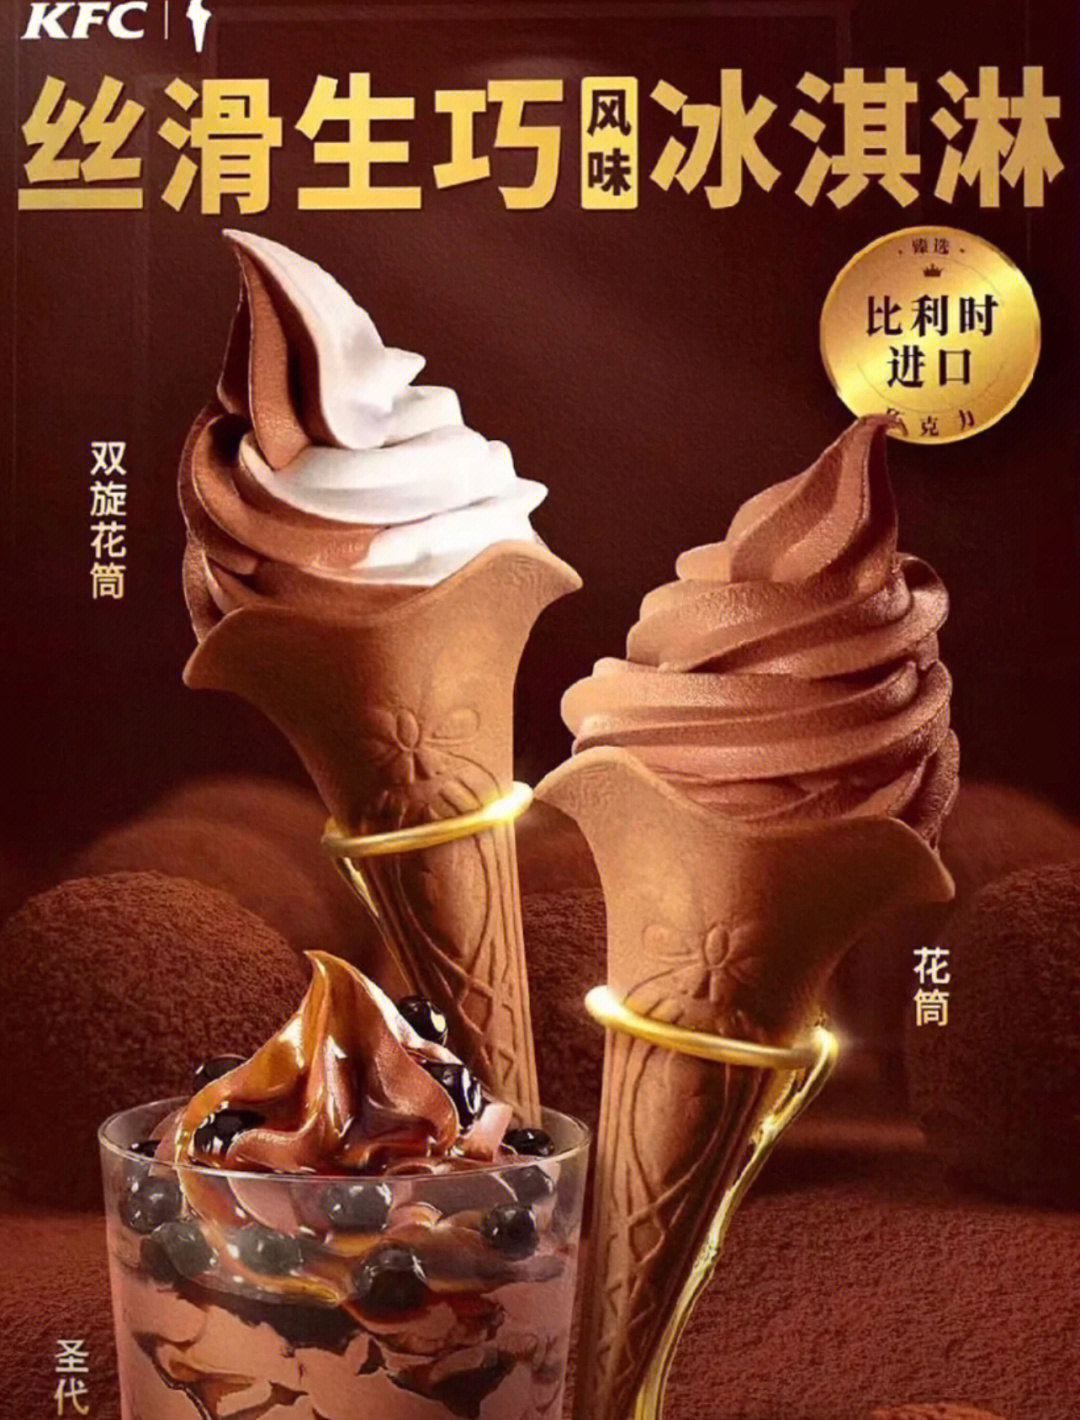 肯德基冰淇淋新品2020图片